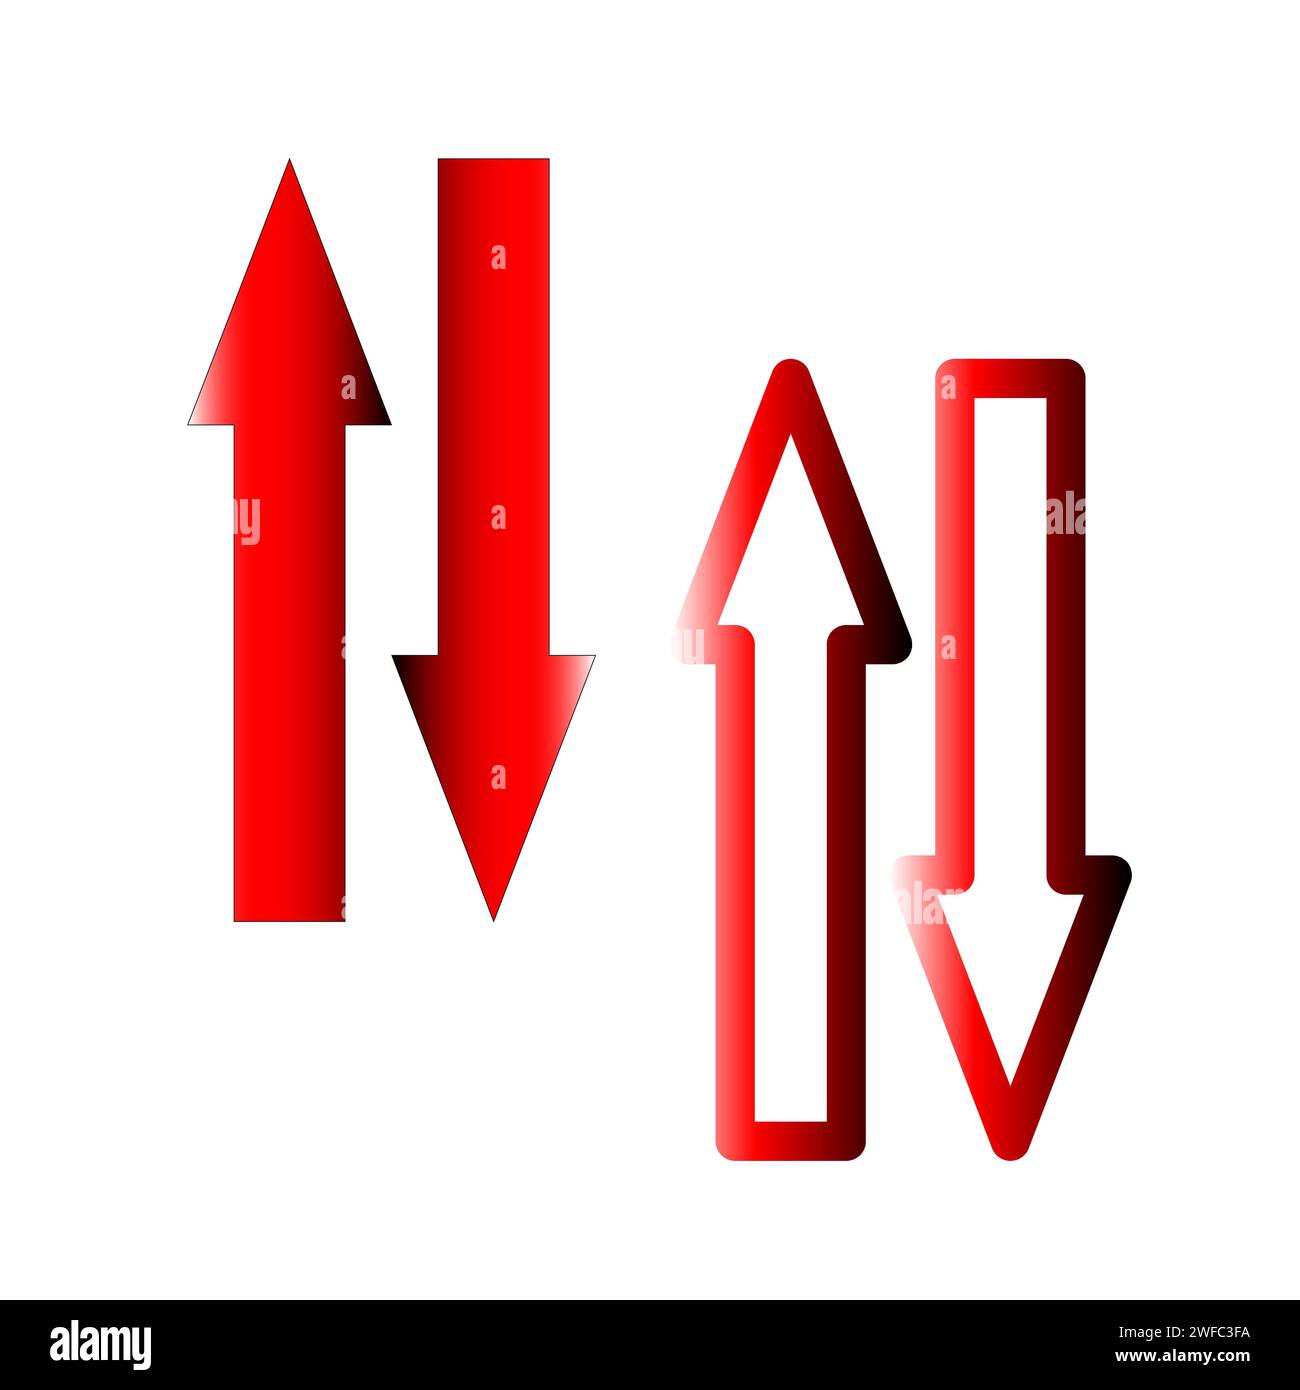 Flèches droites rouges abstraites. Flèche rouge vers le haut. Illustration vectorielle. Image de stock. SPE 10. Illustration de Vecteur